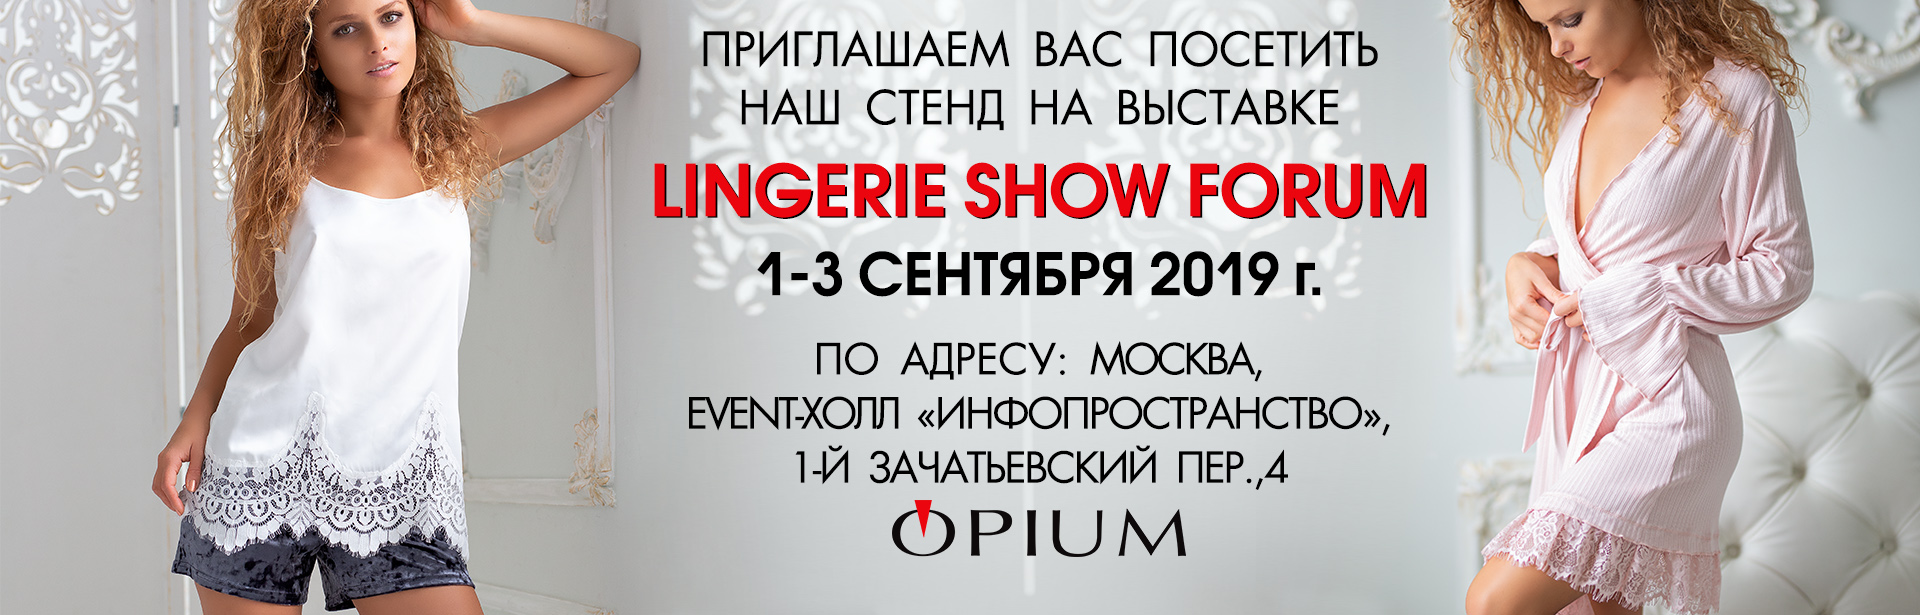 Приглашаем на выставку LINGERIE SHOW-FORUM 1-3 сентября 2019г